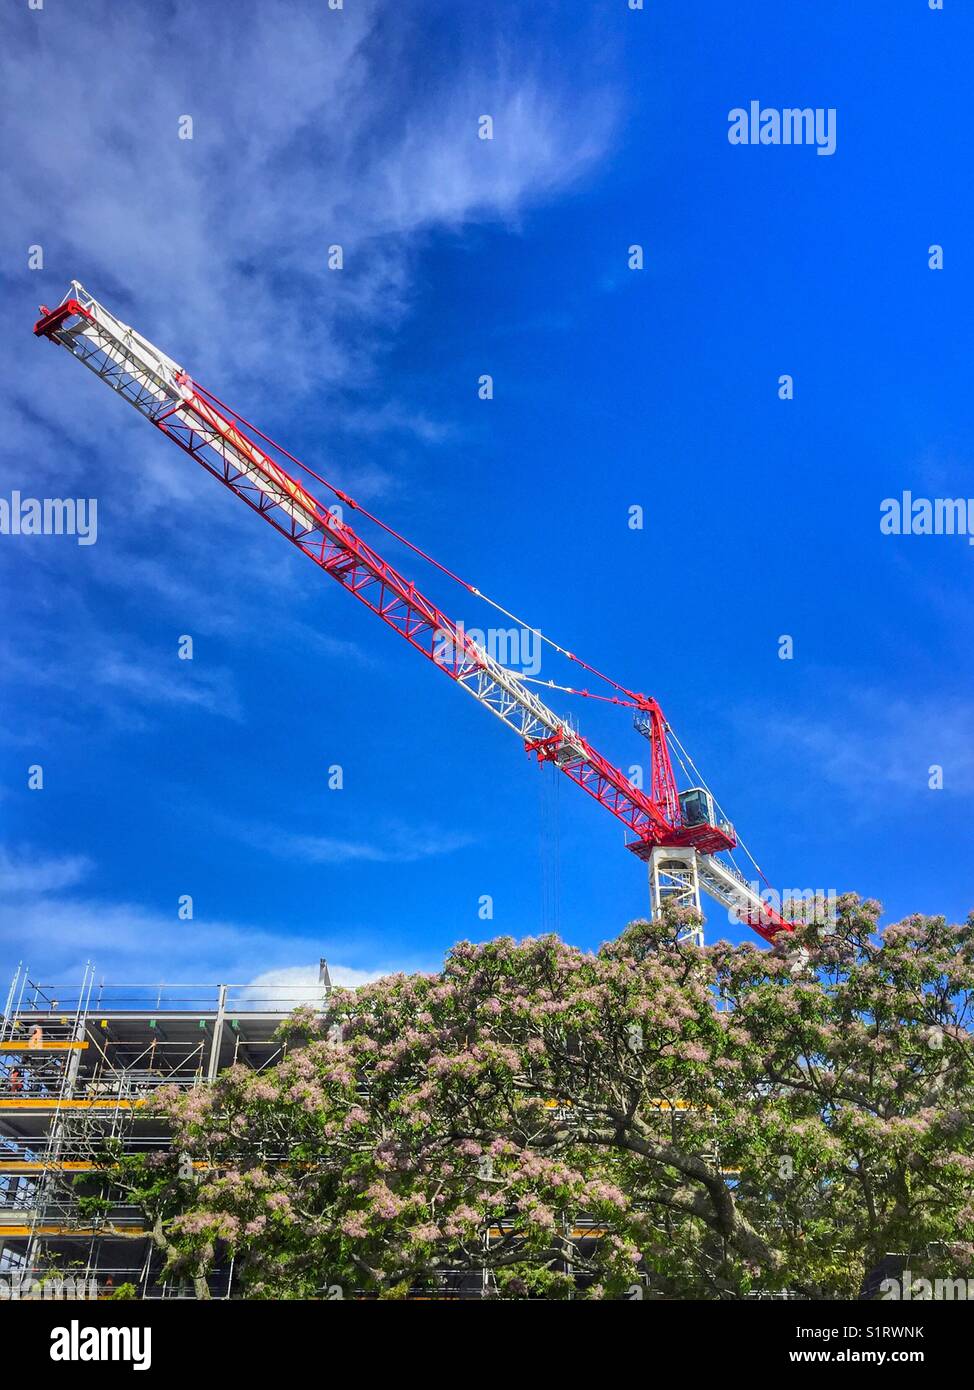 Bau kran auftauchenden hoch in den blauen Himmel über einer urbanen Landschaft Stockfoto